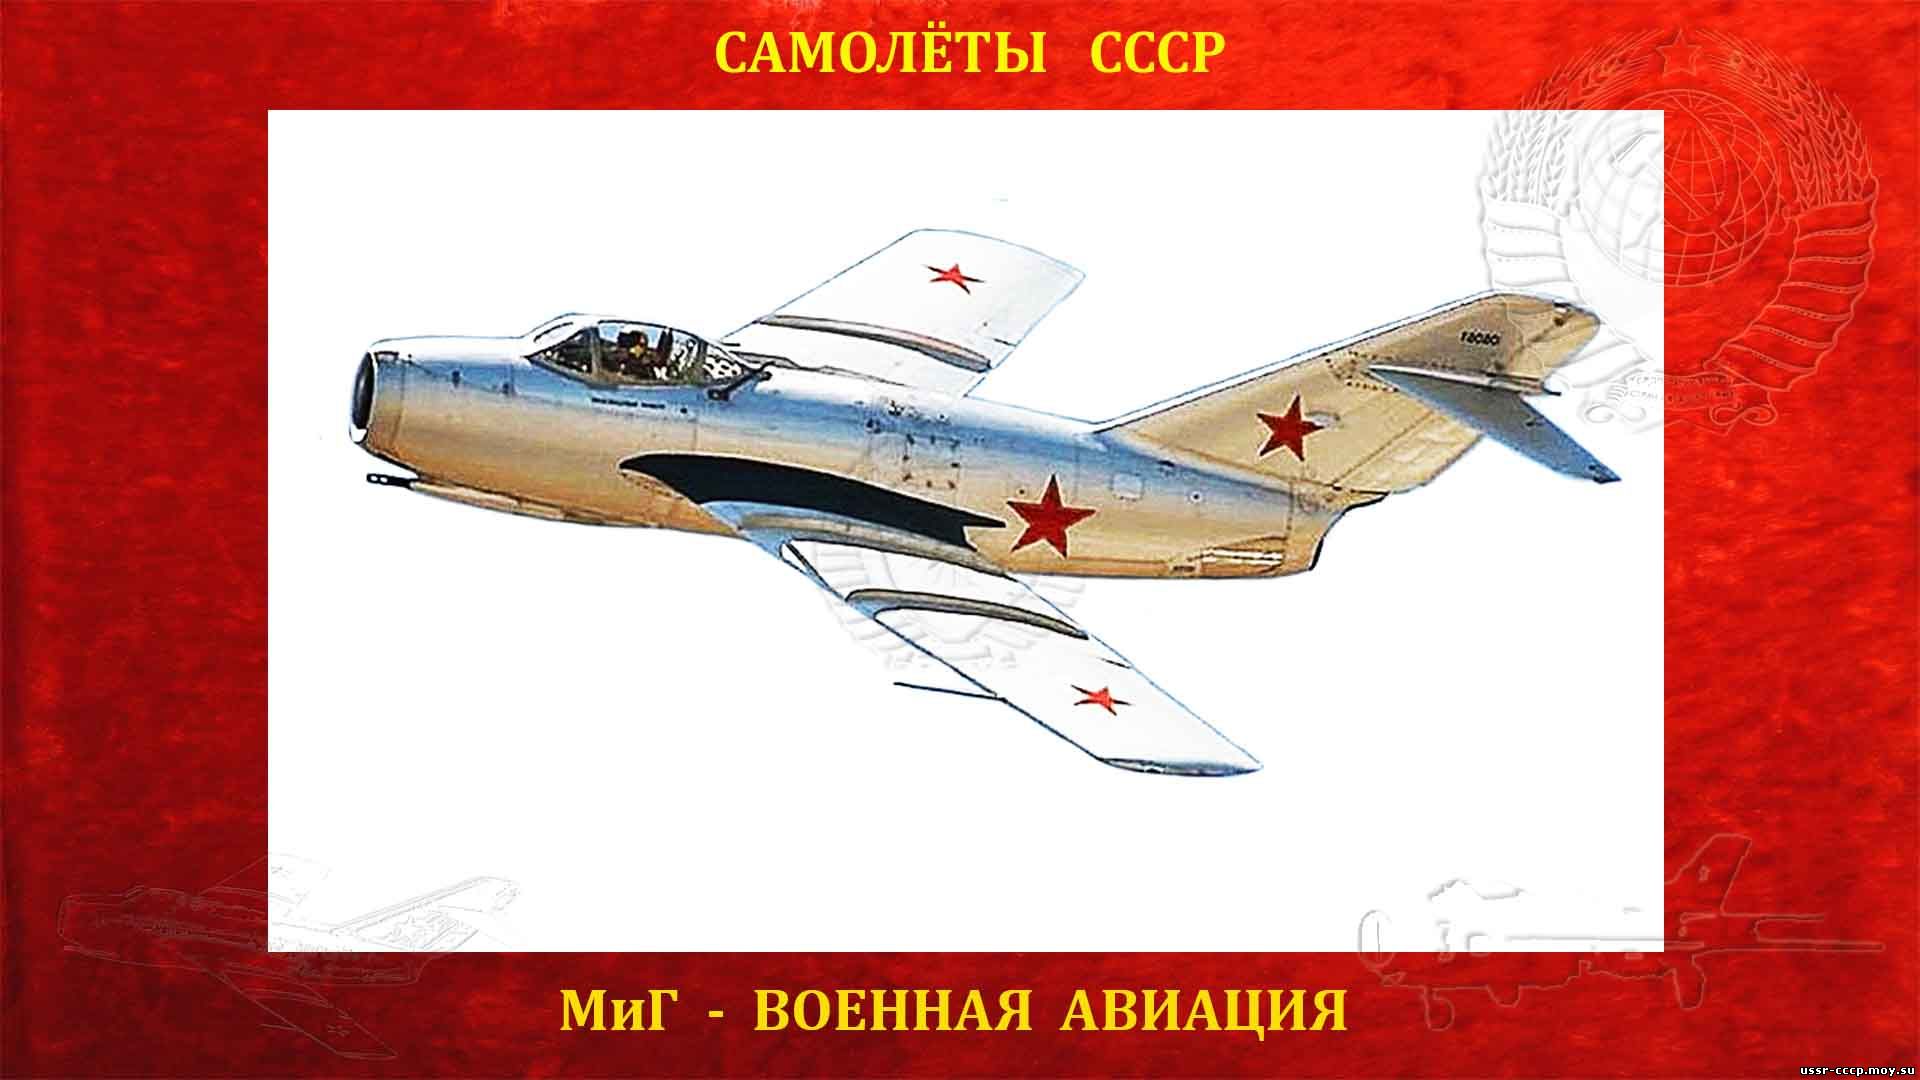 МиГ-15 - Советский реактивный истребитель (1947) - (Полное описание)